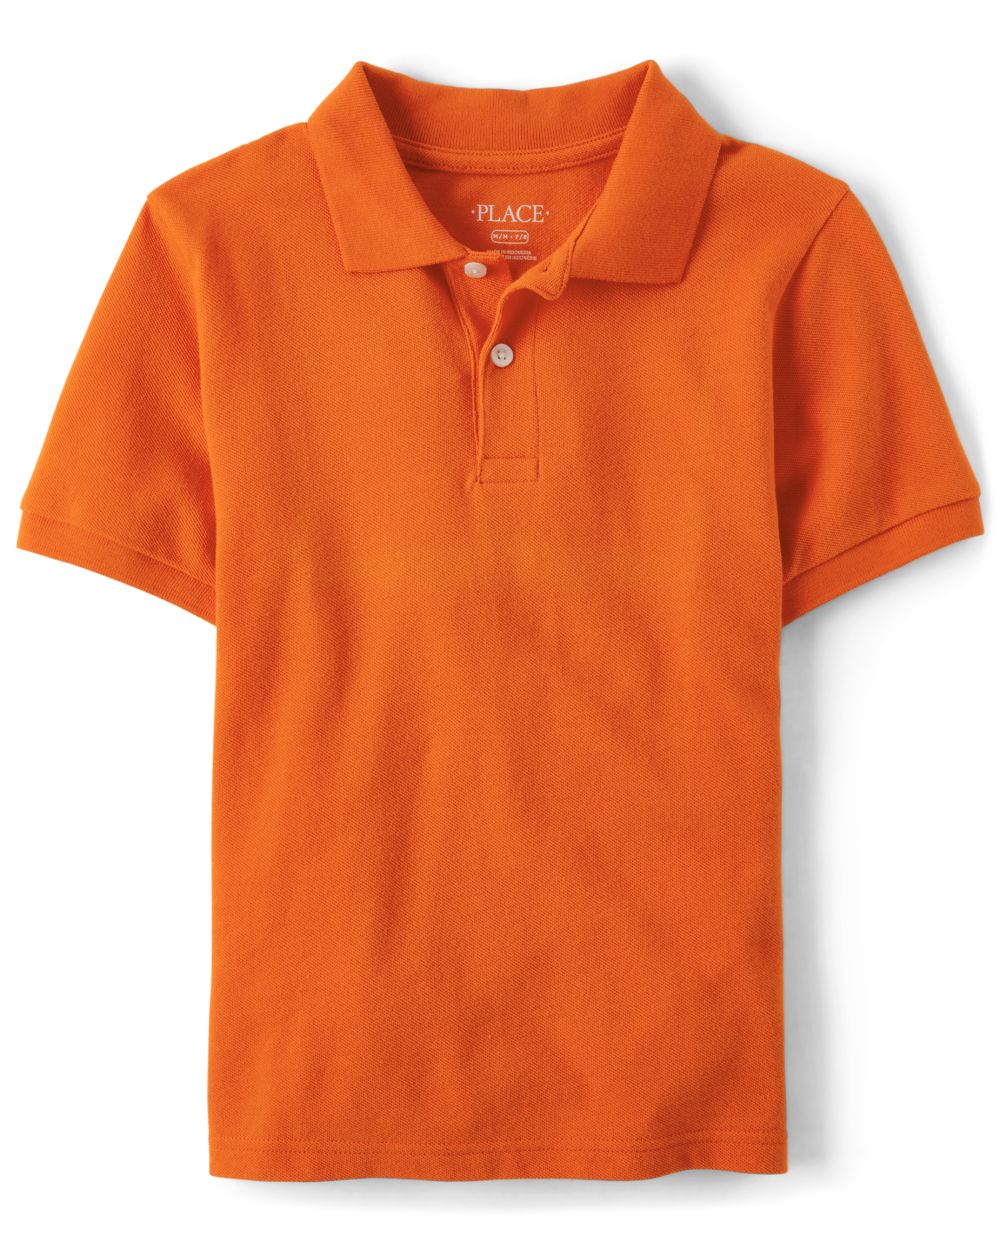 The Children's Place Boys Uniform Pique Polo - Orange - Xs (4)